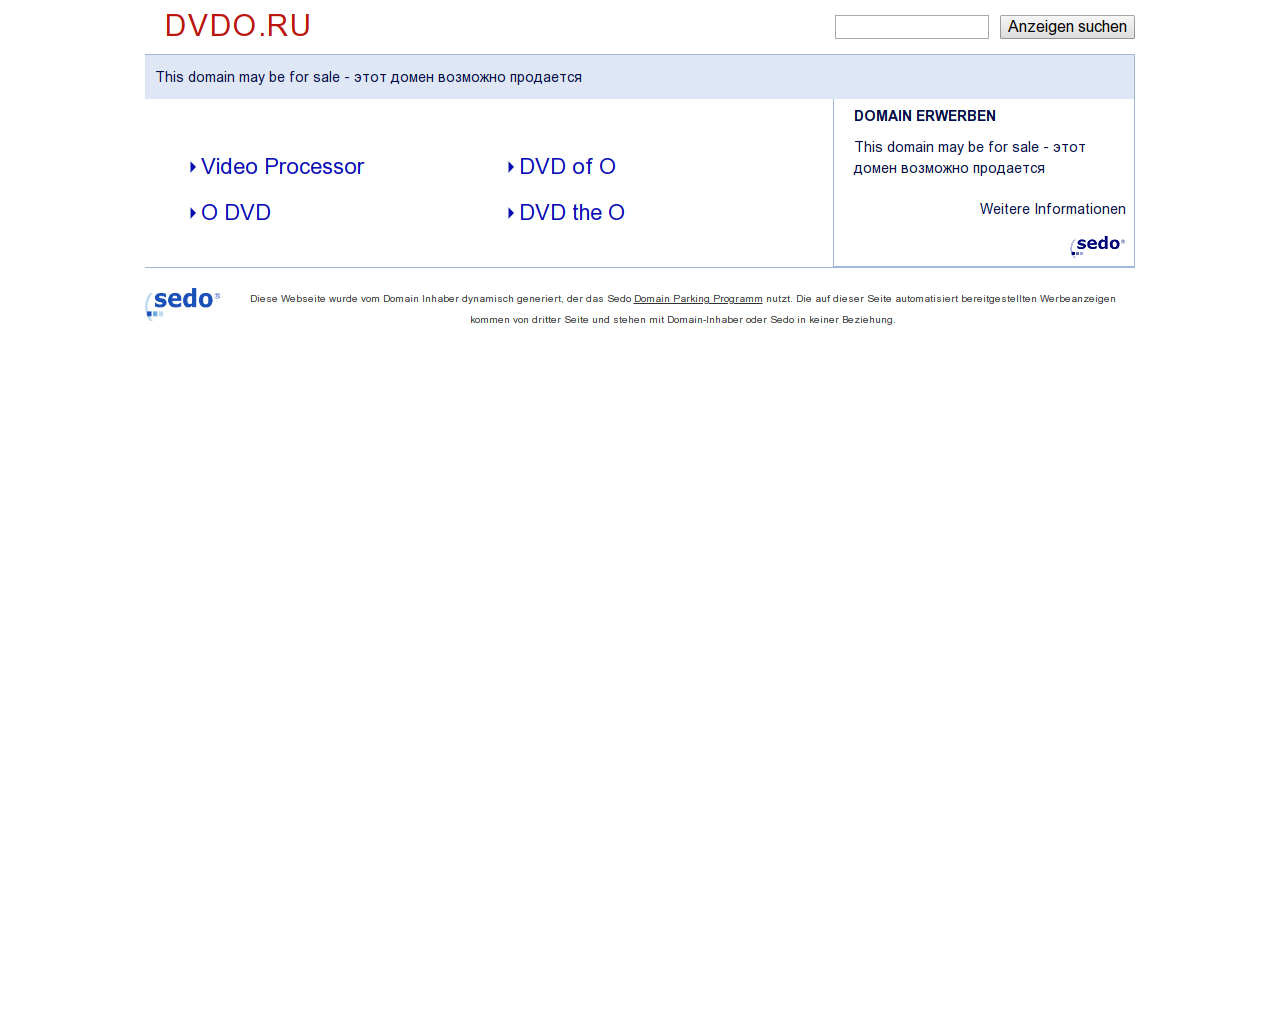 Изображение сайта dvdo.ru в разрешении 1280x1024